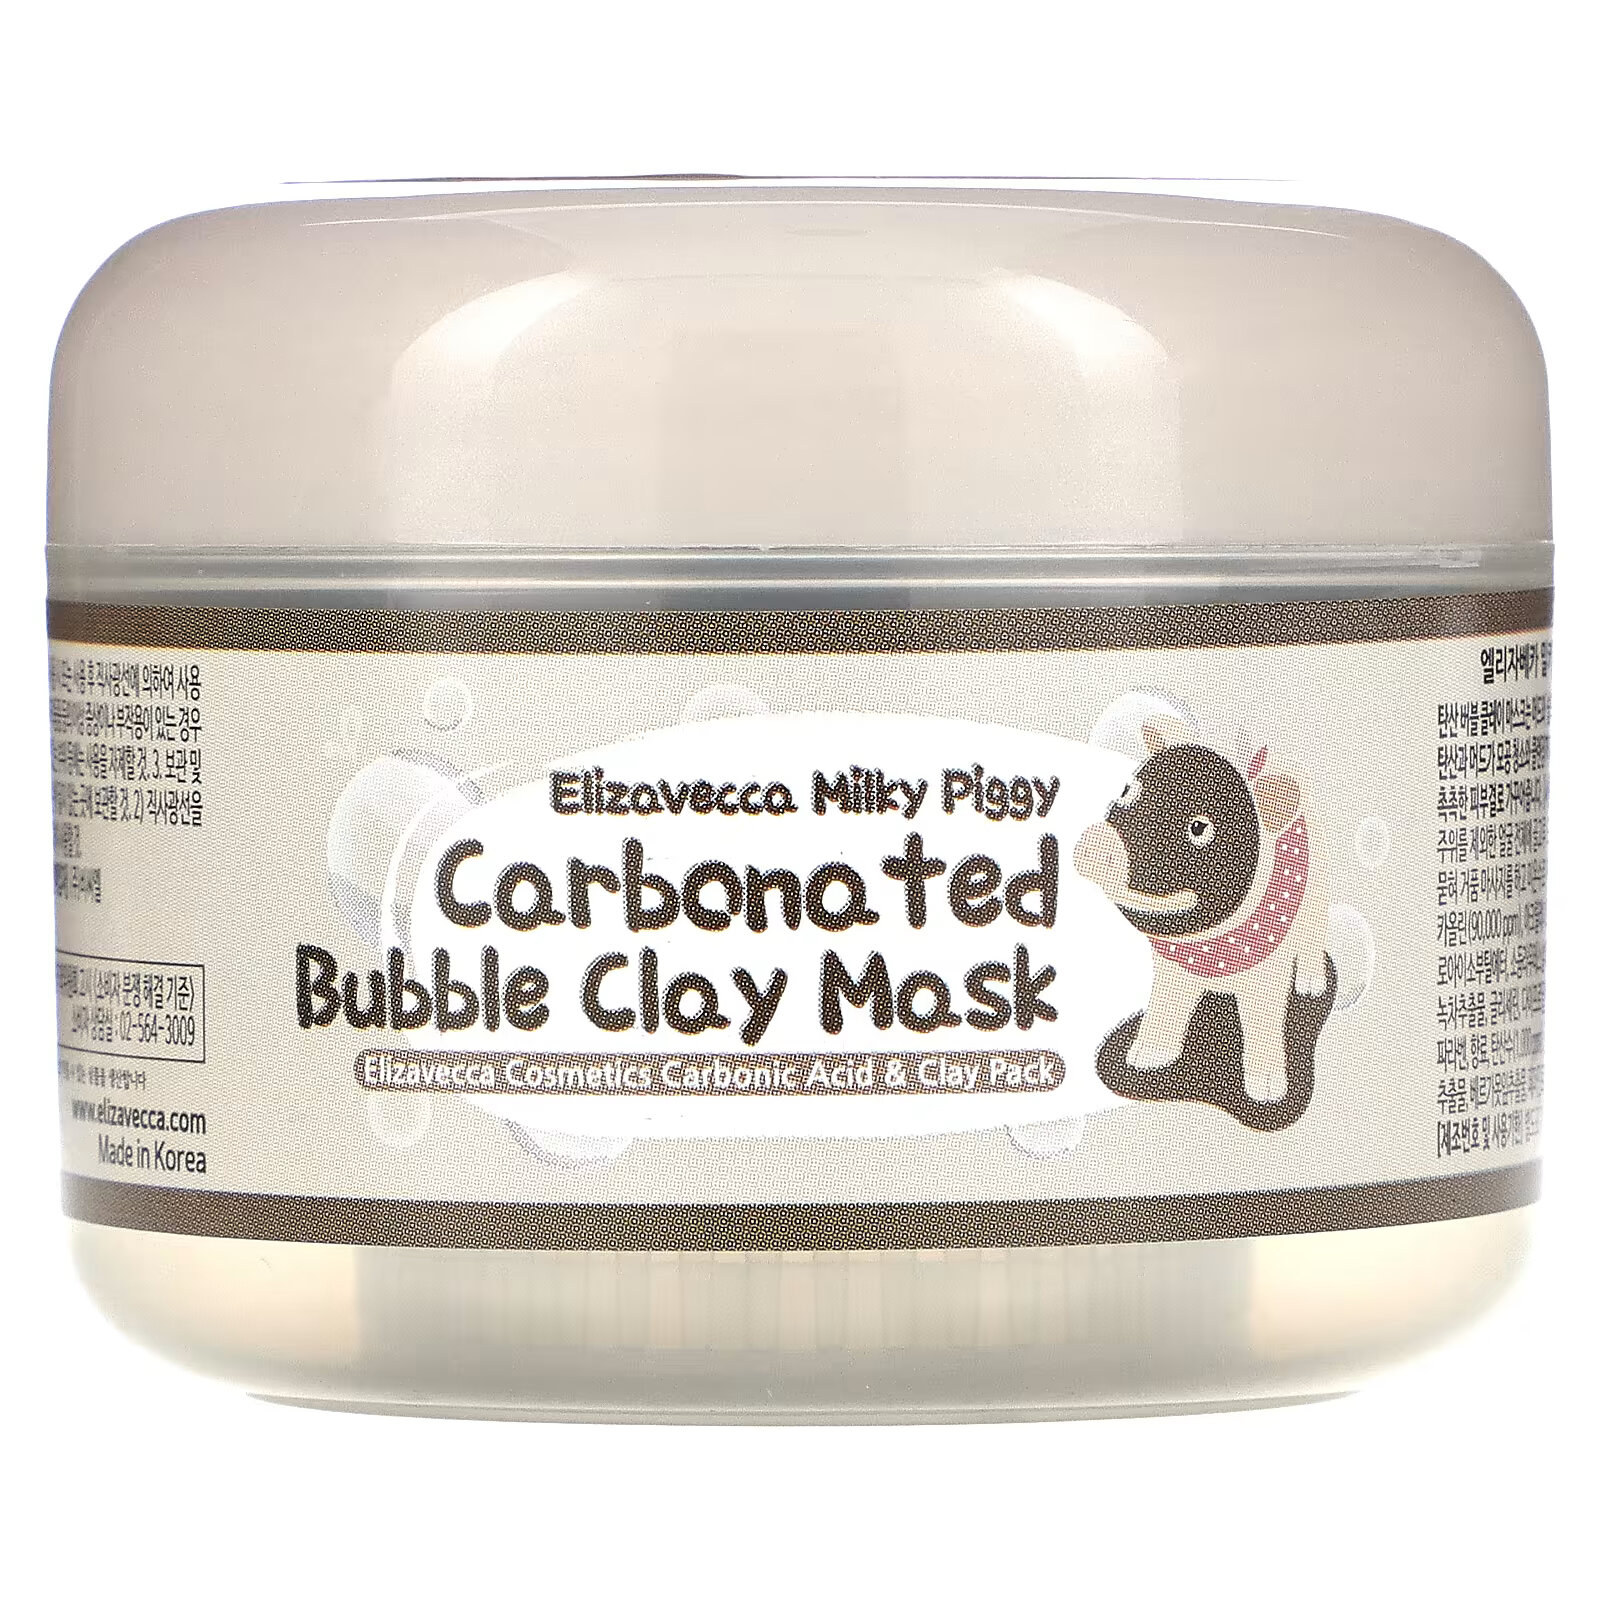 Elizavecca, Milky Piggy карбонизированная глиняно-пузырьковая маска, 100 г elizavecca milky piggy карбонизированная глиняно пузырьковая маска 100 г